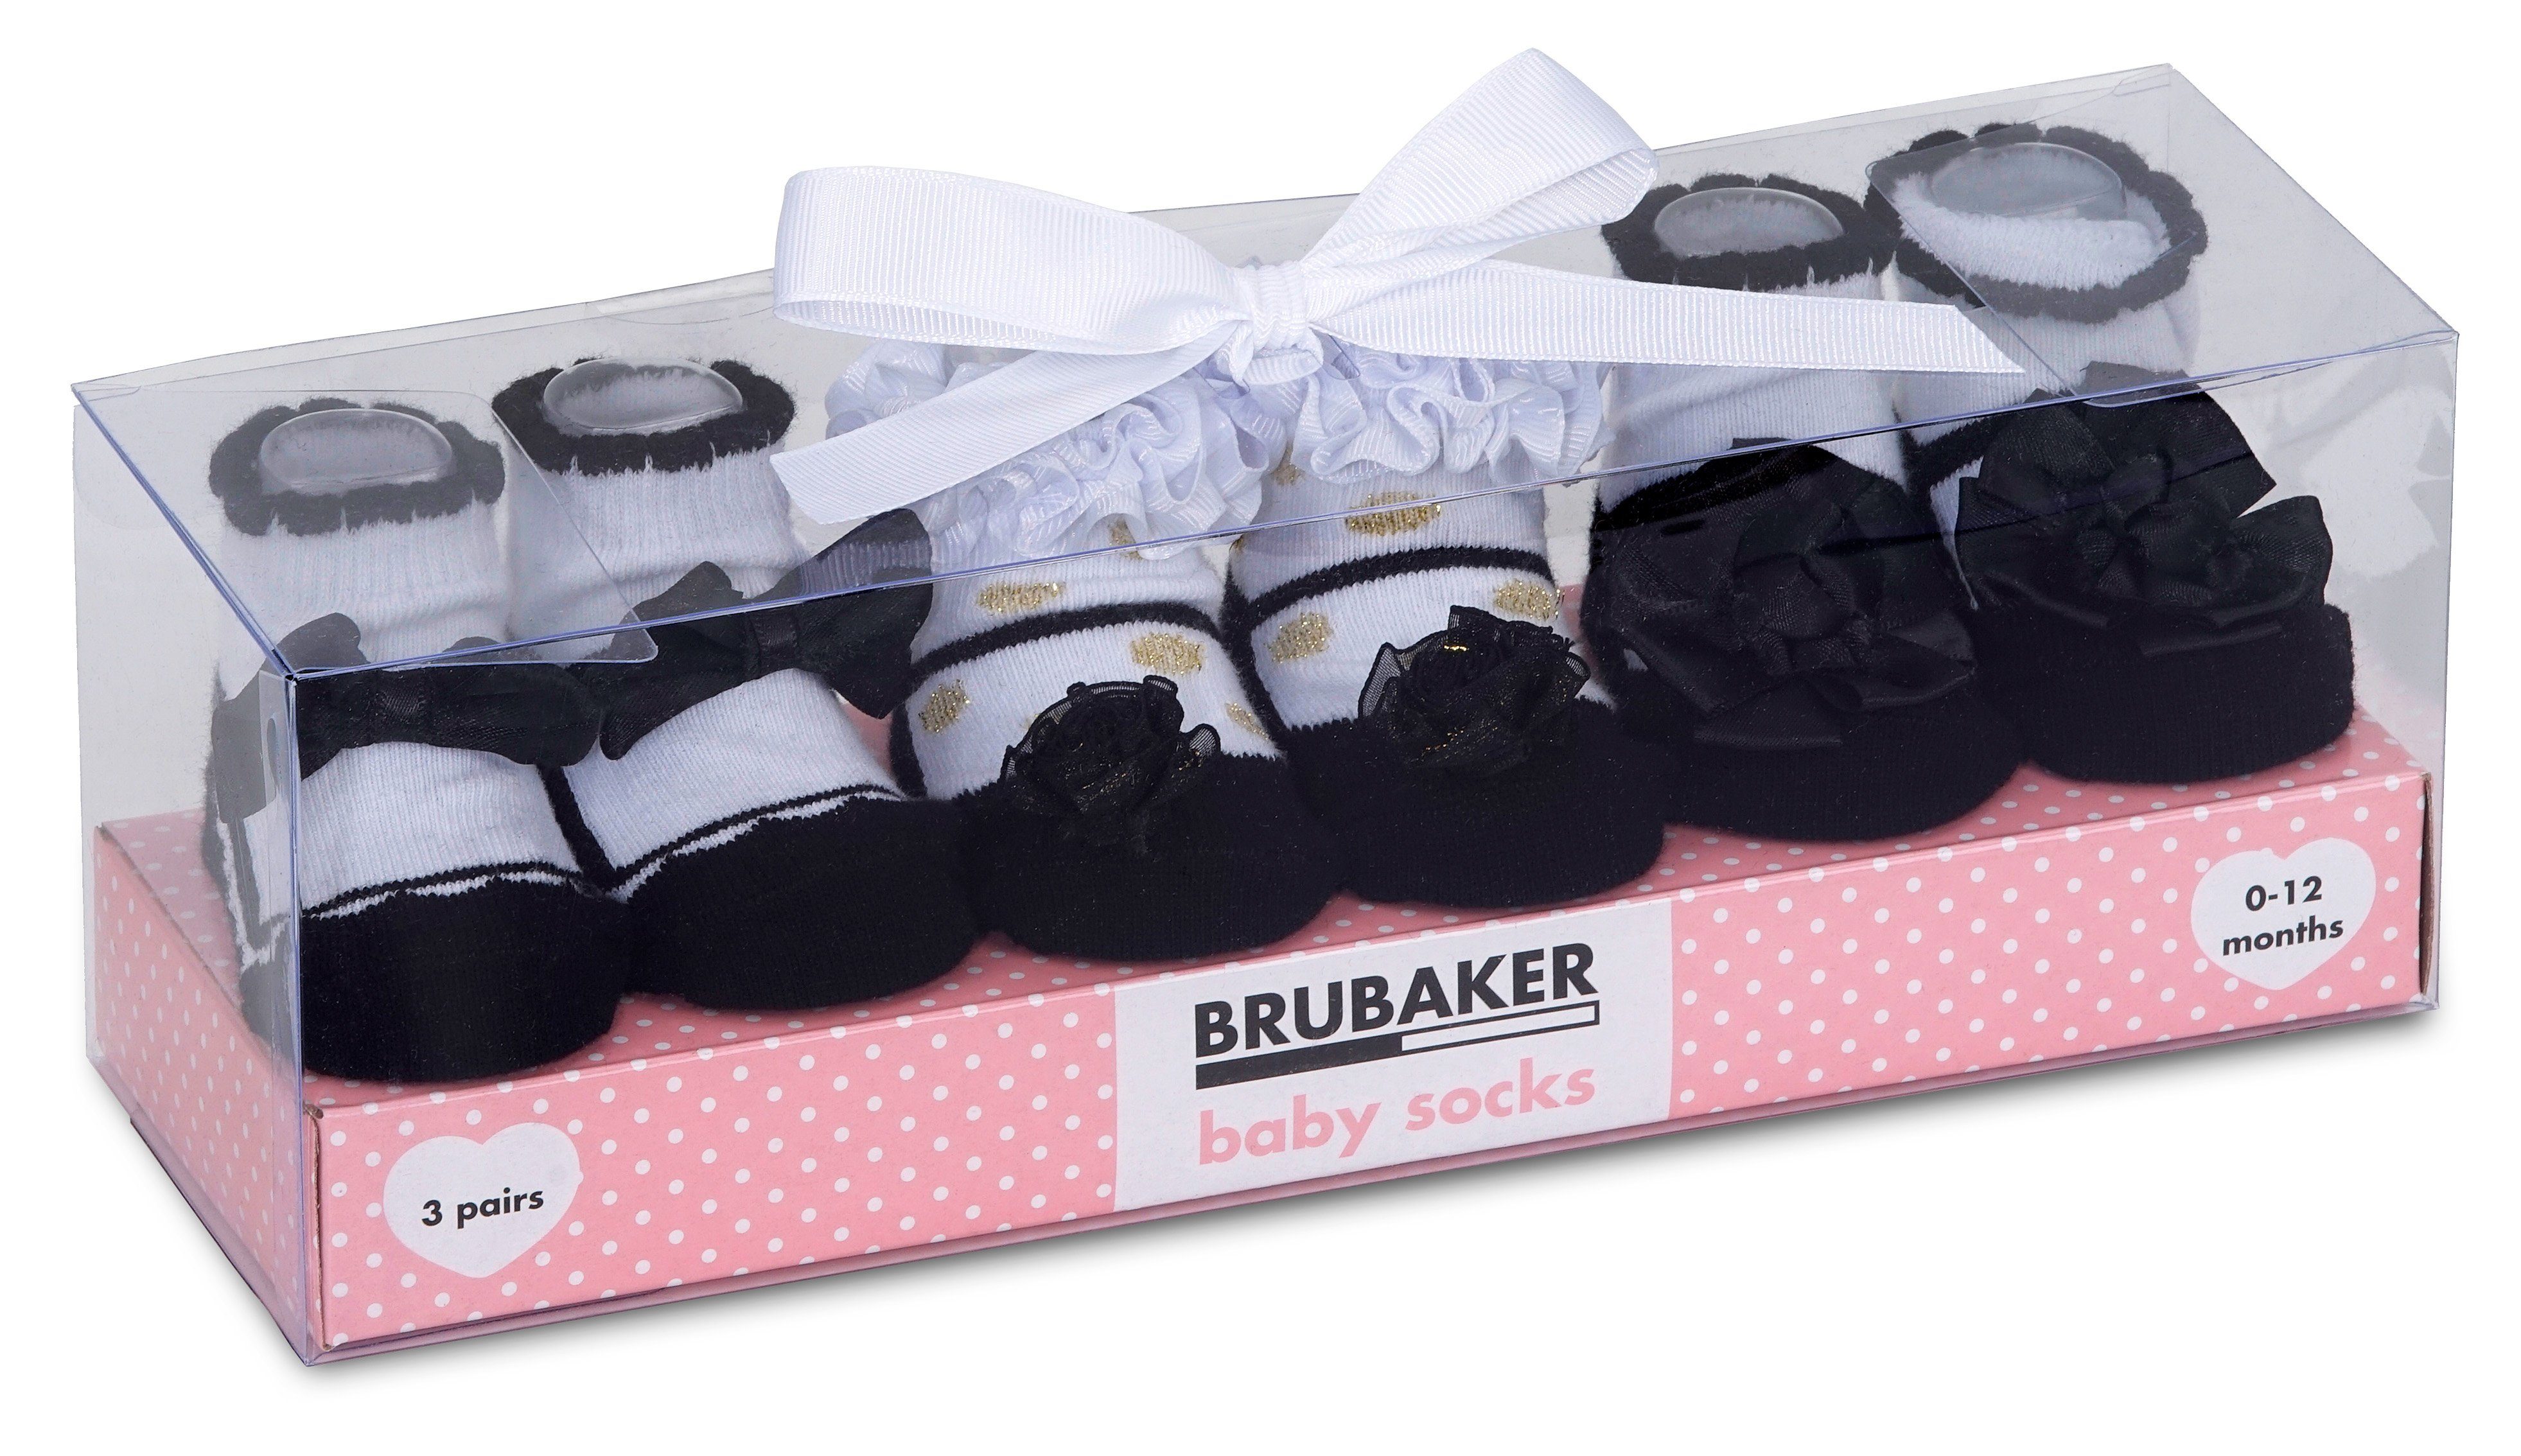 BRUBAKER Socken »Babysocken für Mädchen 0-12 Monate« (3-Paar,  Baumwollsocken mit festlicher Farbgebung) Baby Geschenkset für Neugeborene  in Geschenkverpackung mit Schleife online kaufen | OTTO